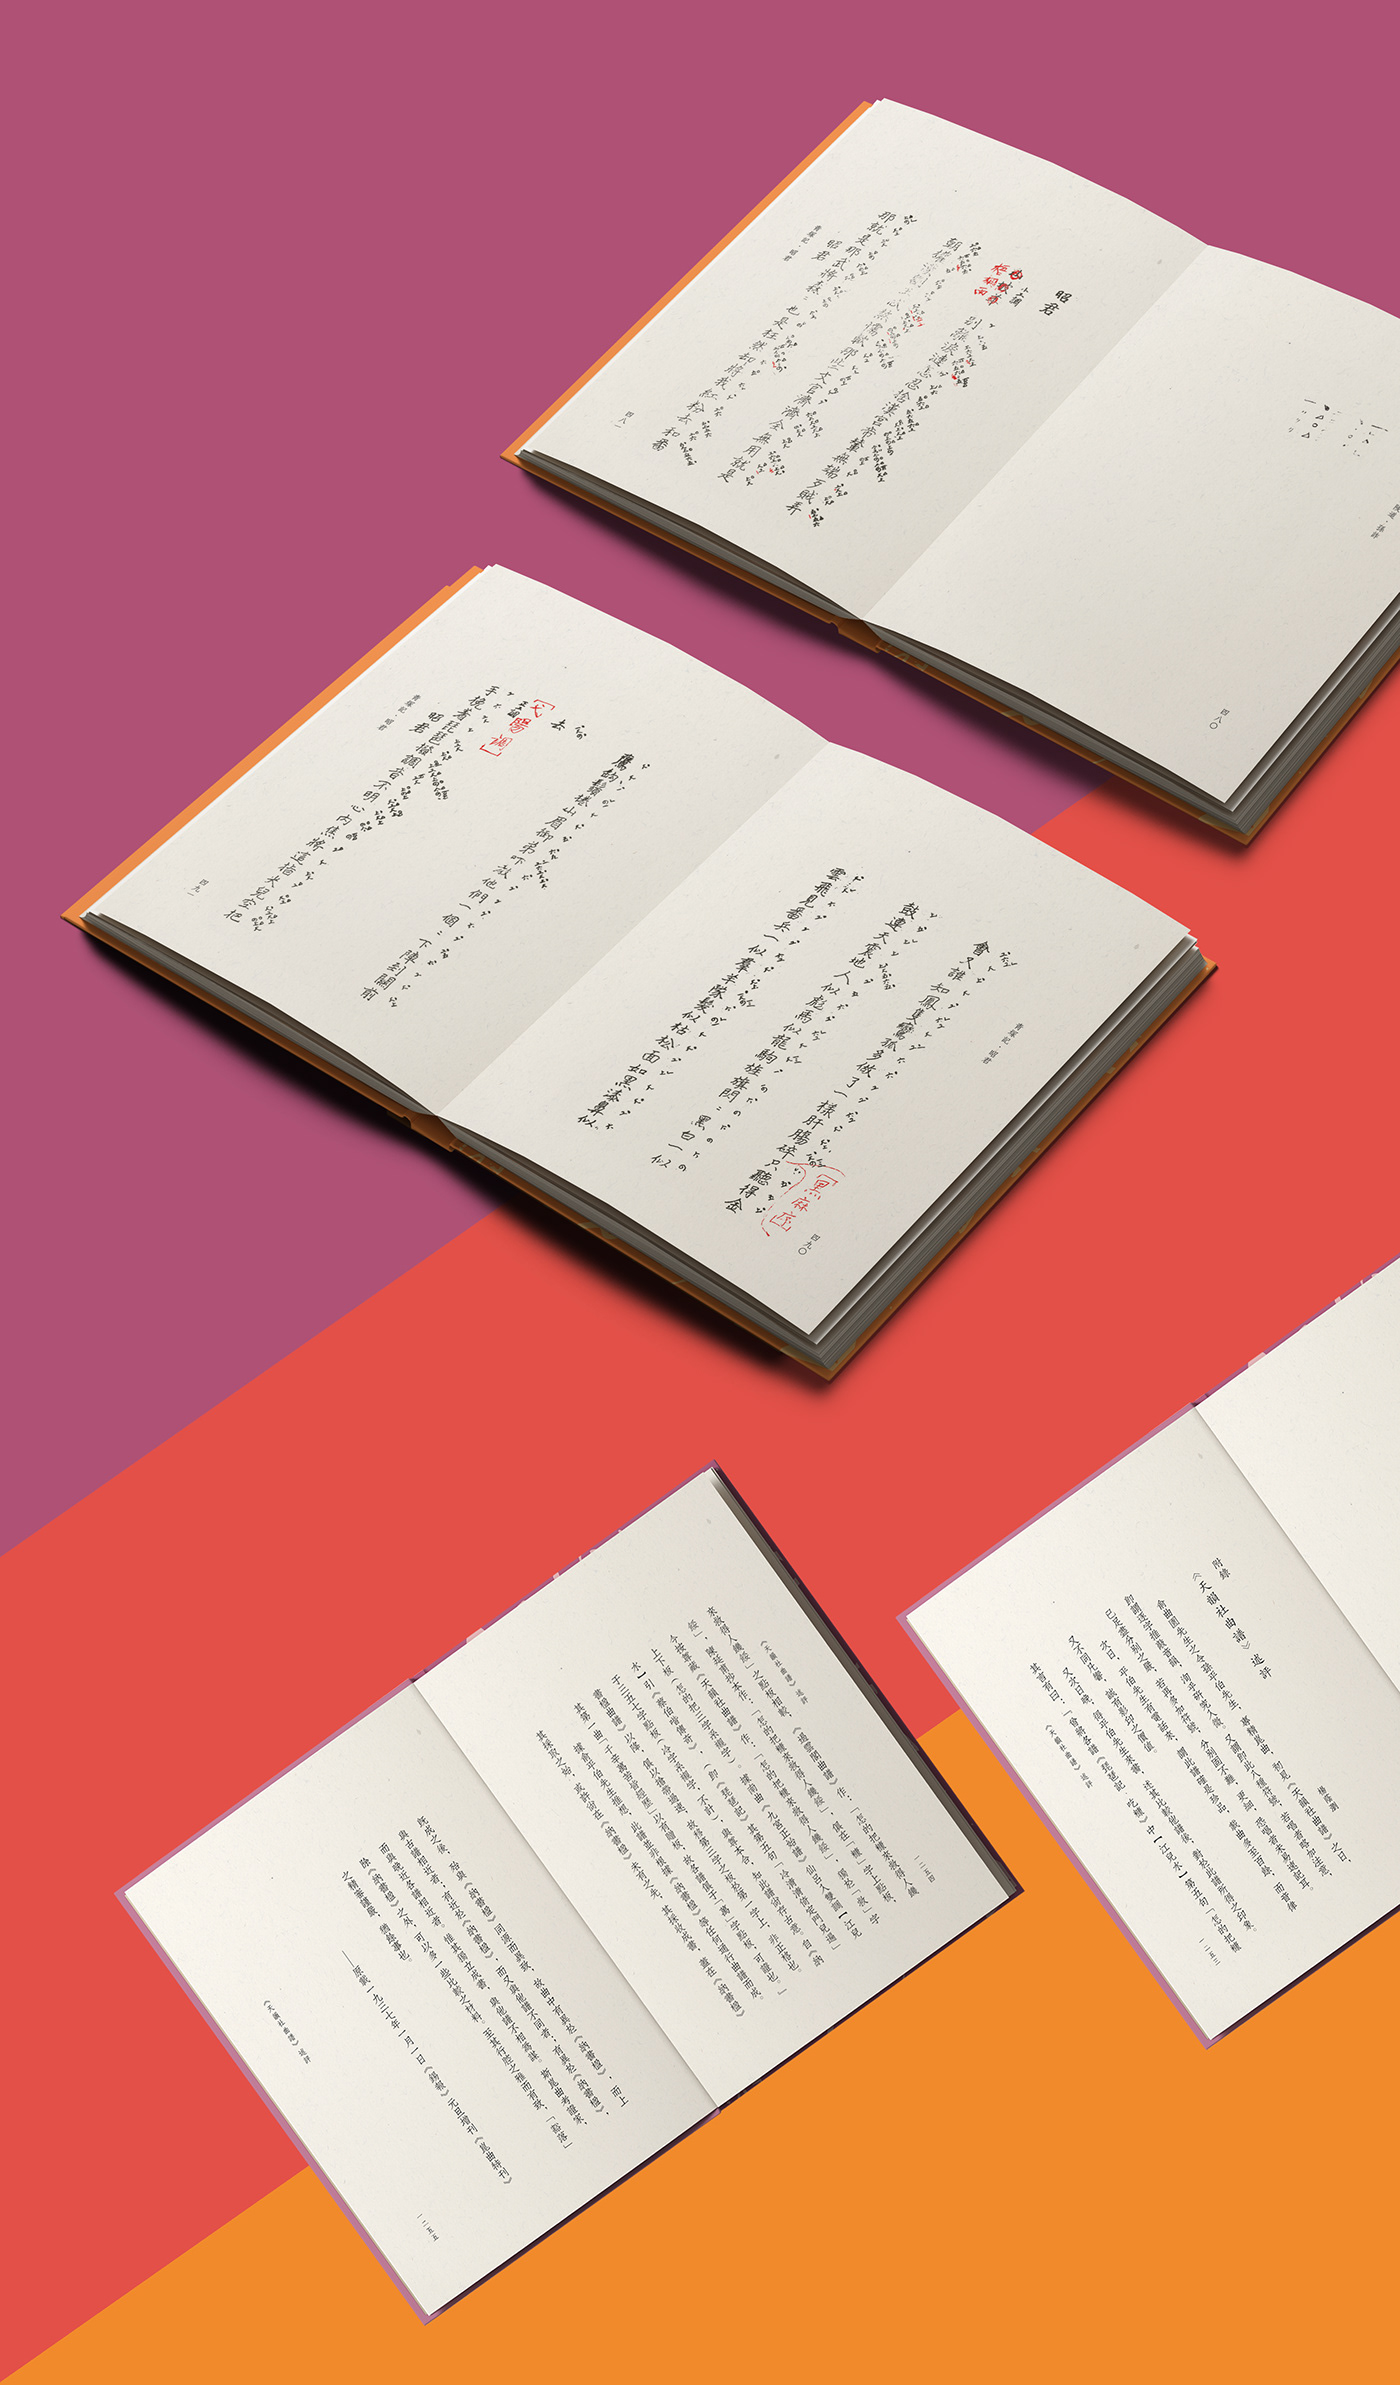 book design cover design book set folding case visual identity pattern editorial design  Kunqu opera Chinese culture colors